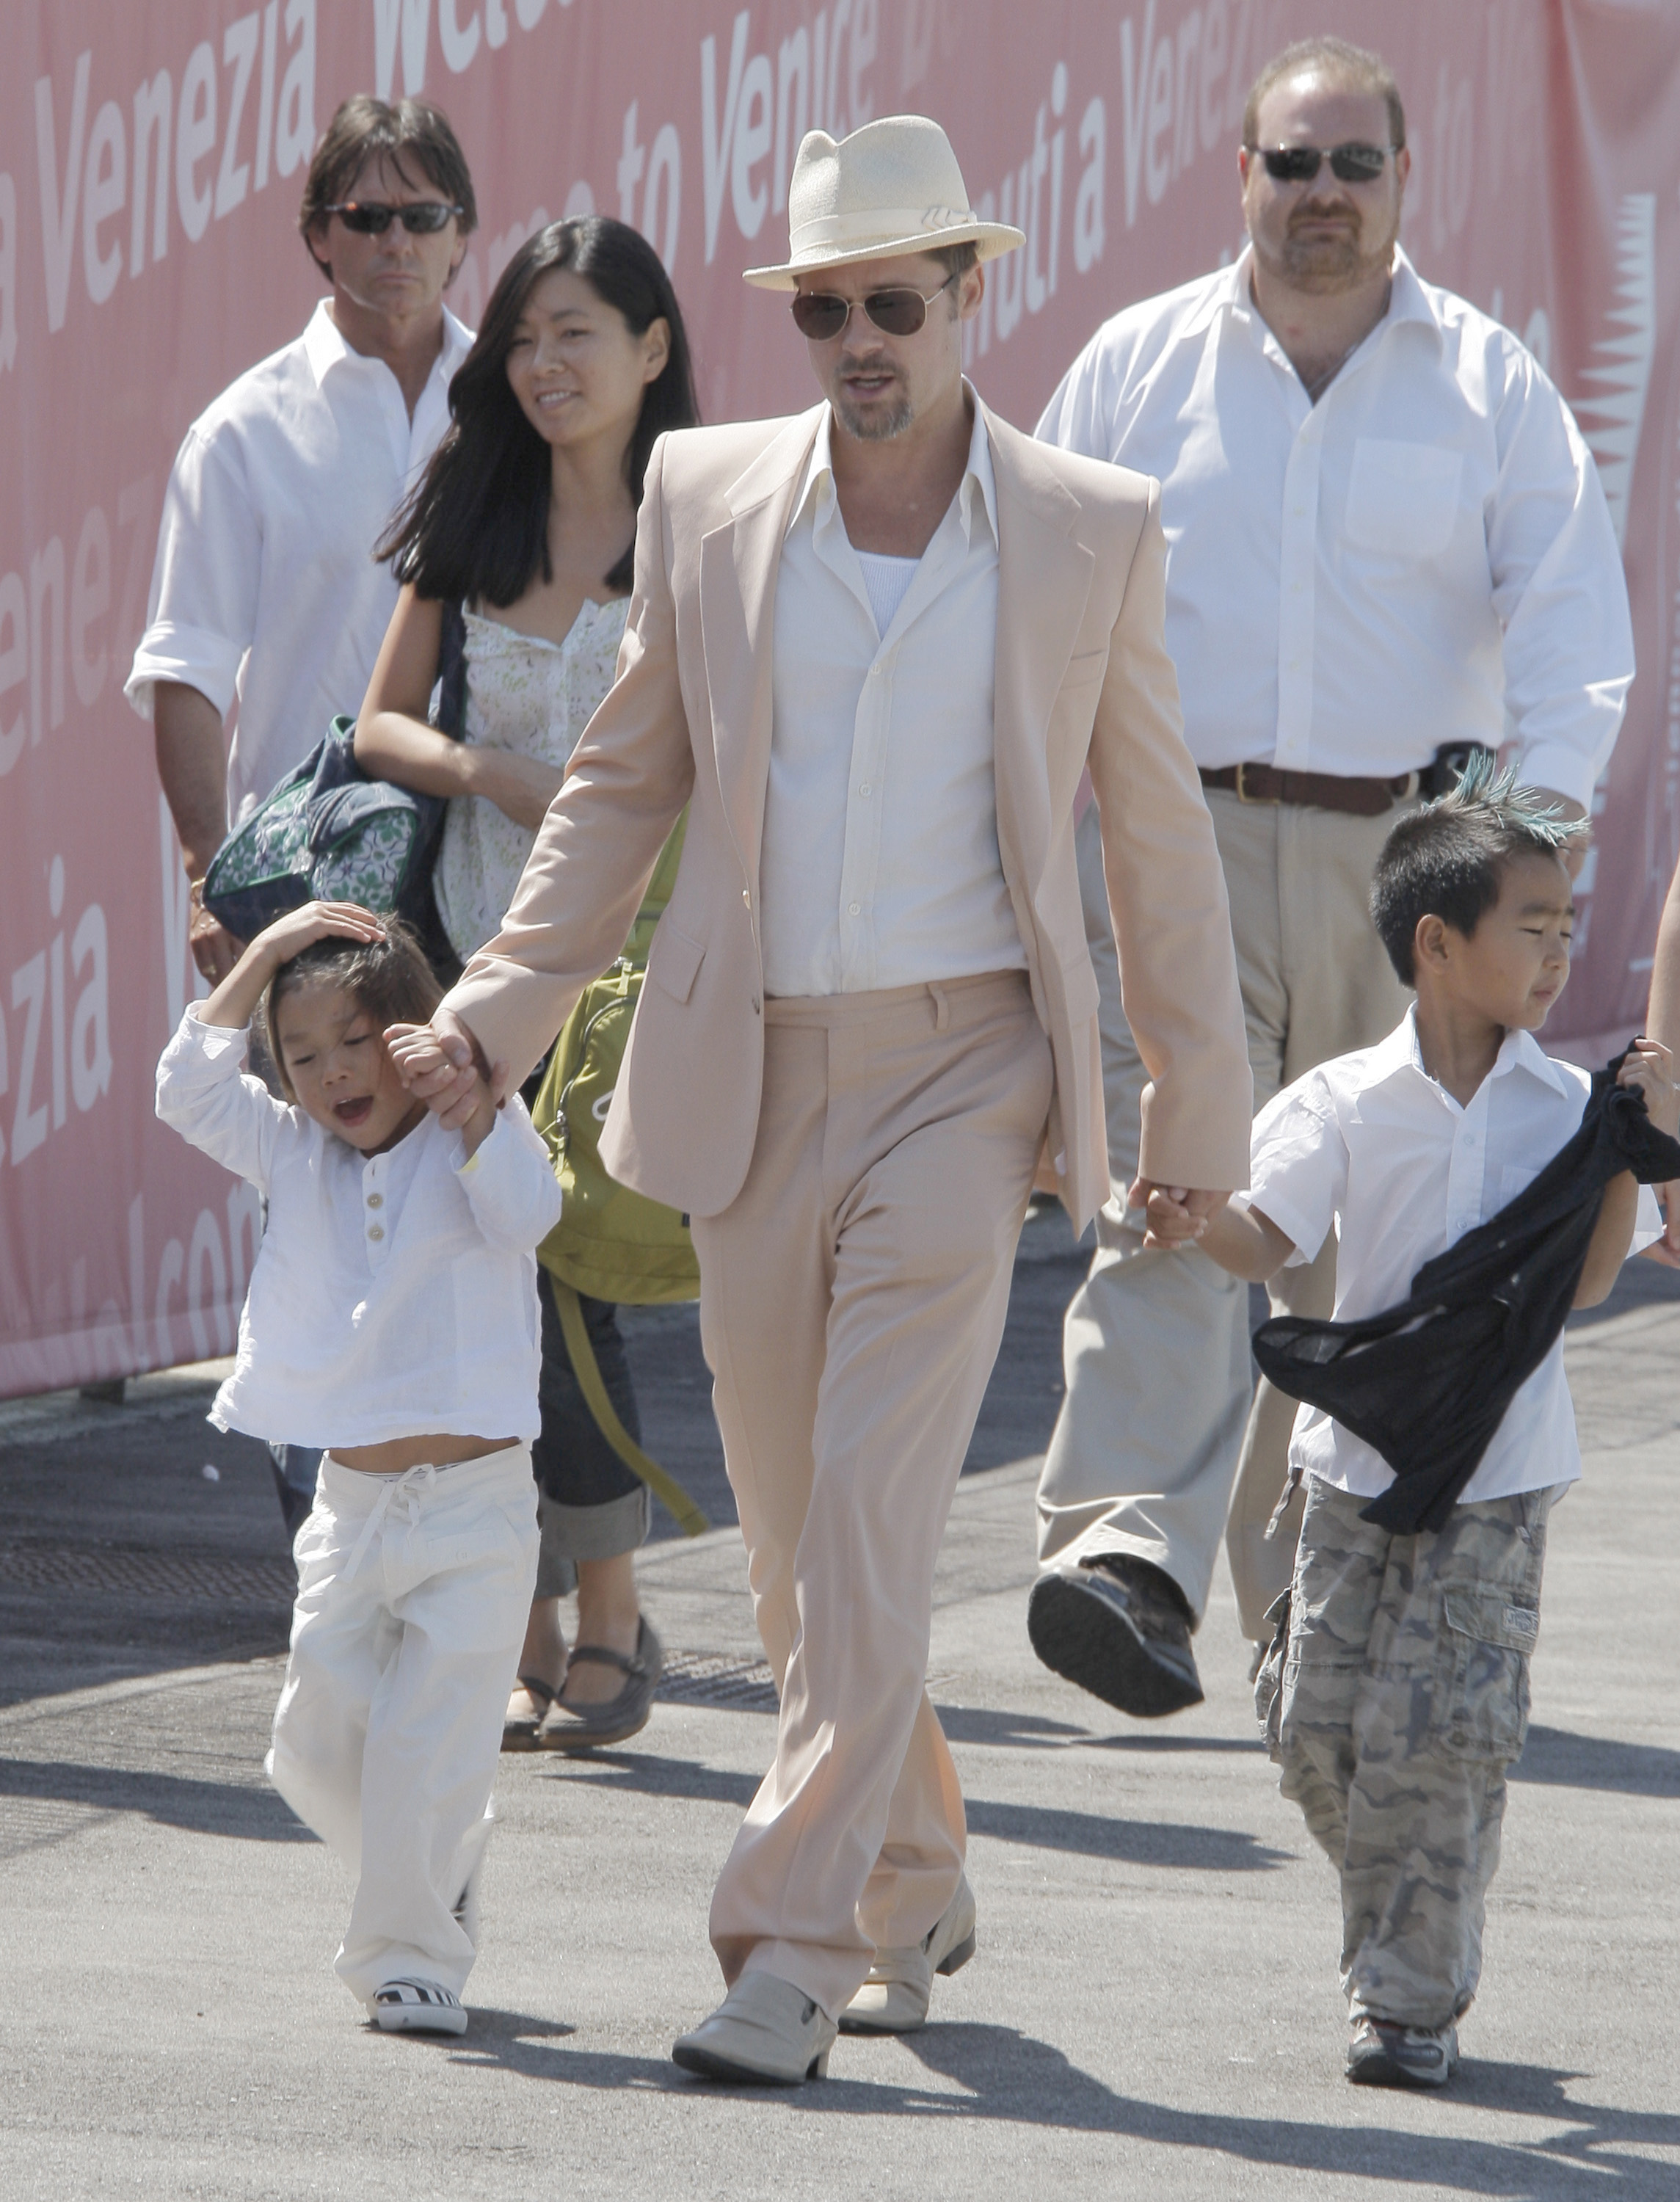 Brad Pitt verlässt zusammen mit seinen Adoptivsöhnen Pax Thien Jolie-Pitt und Maddox Jolie-Pitt Venedig nach seinem Aufenthalt bei den Filmfestspielen von Venedig am 28. August 2008 in Venedig, Italien | Quelle: Getty Images